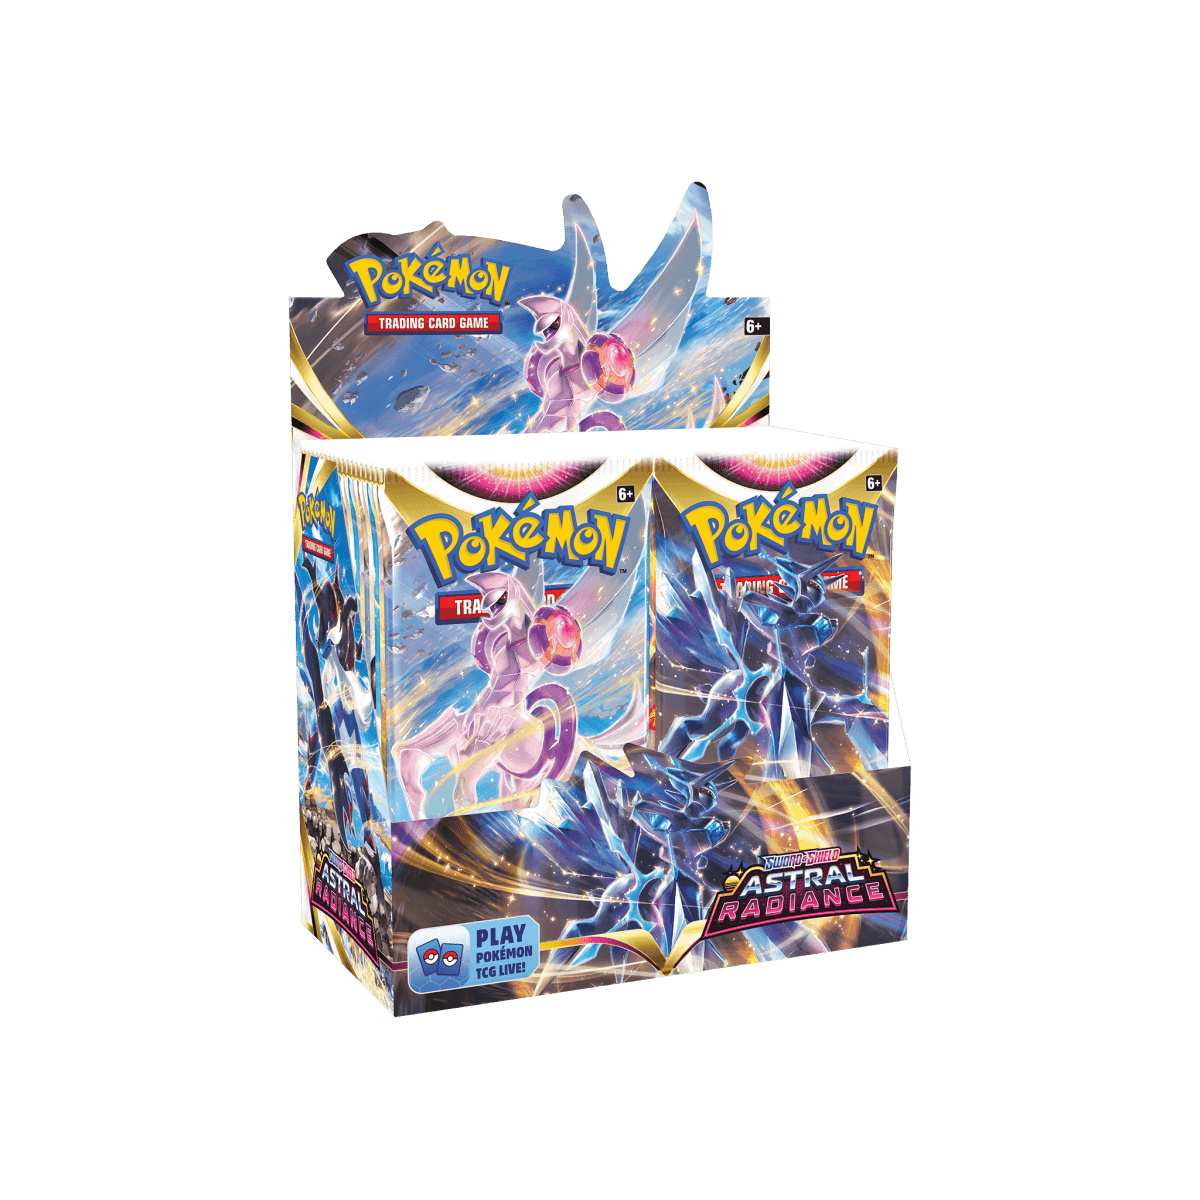 Pokémon TCG - Astral Radiance Booster Box - Cardmaniac.ch